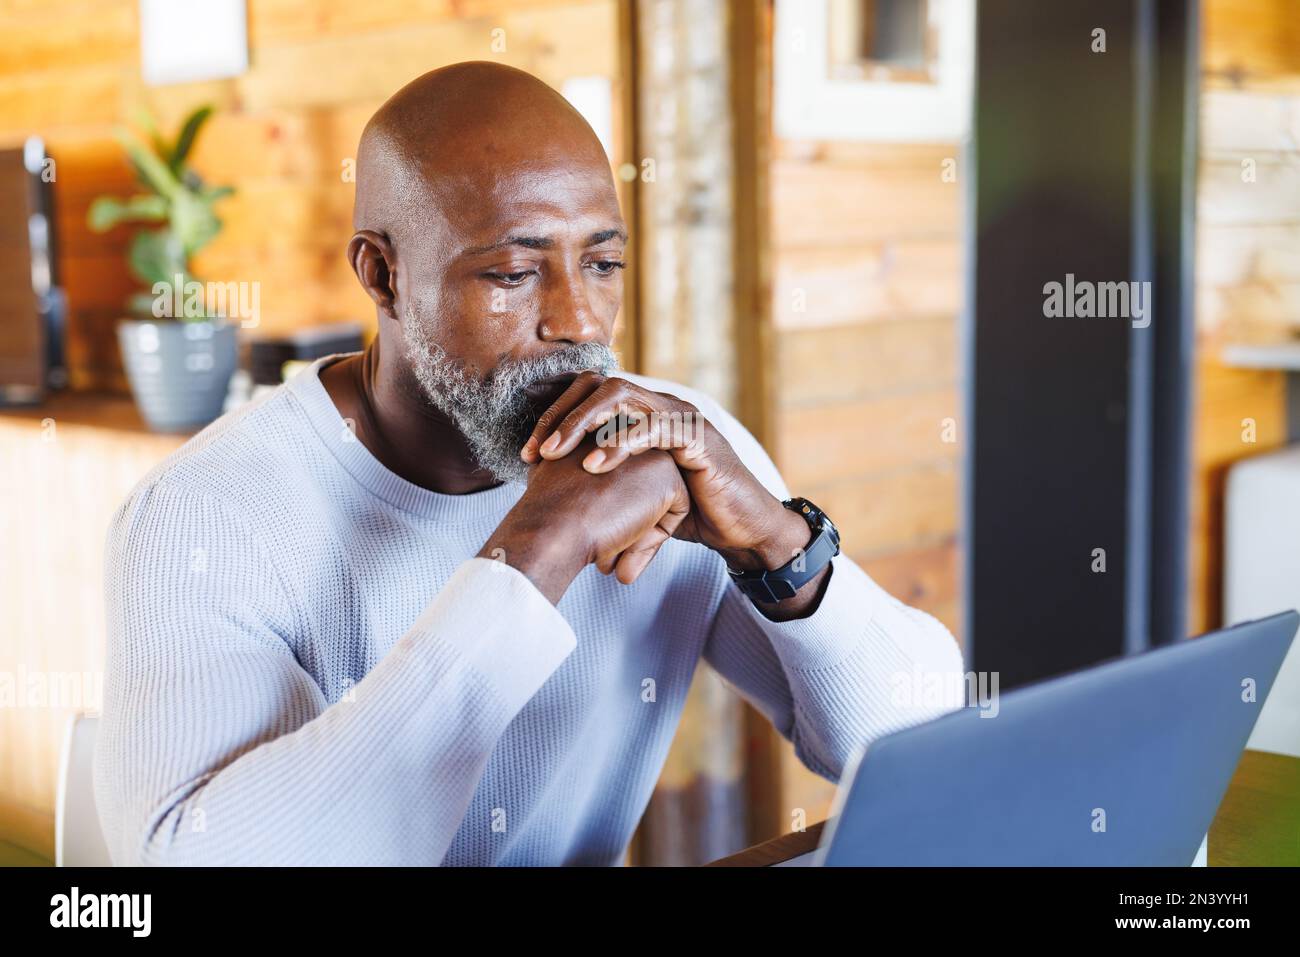 Un homme sérieux et chauve, un homme âgé d'afrique et d'amérique, avec ses mains jointes, regarde un ordinateur portable dans une cabine en rondins Banque D'Images